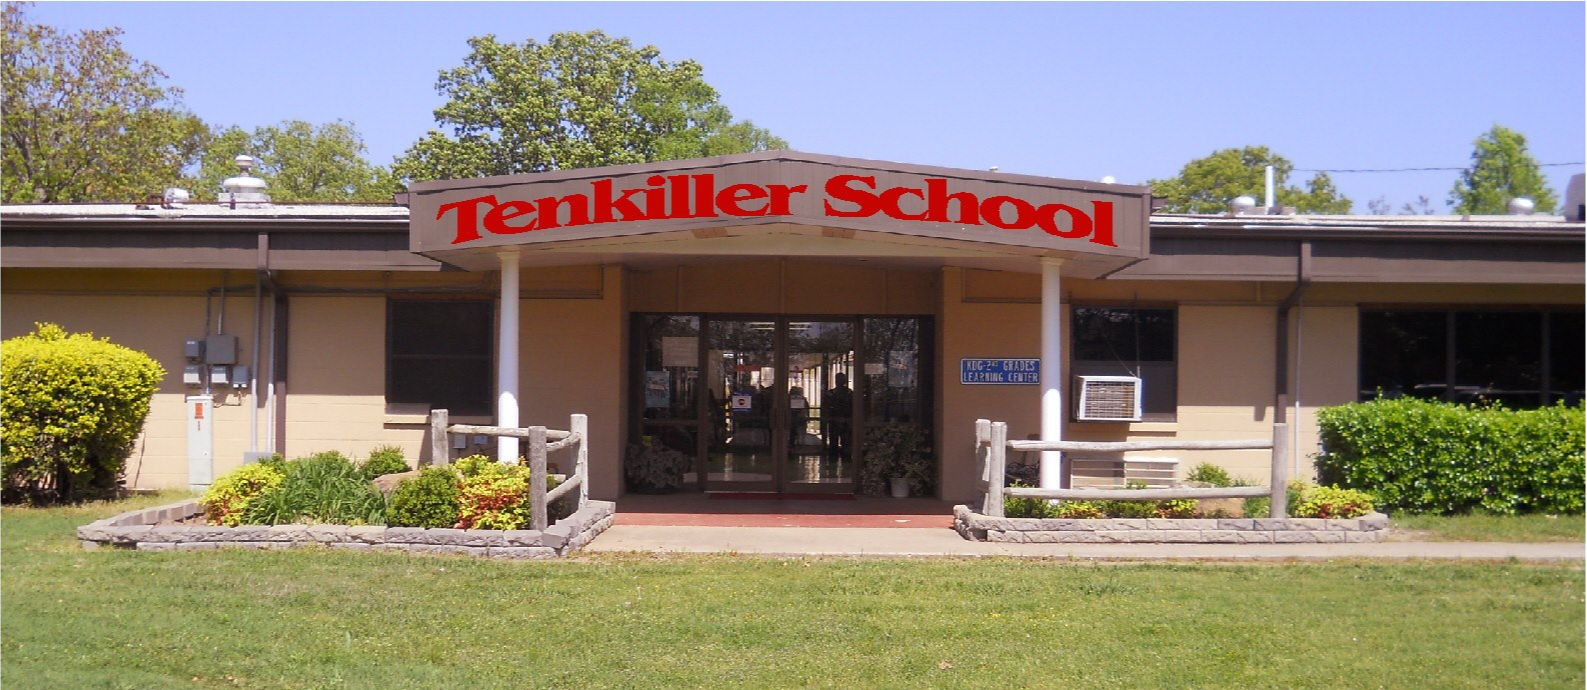 Tenkiller school building